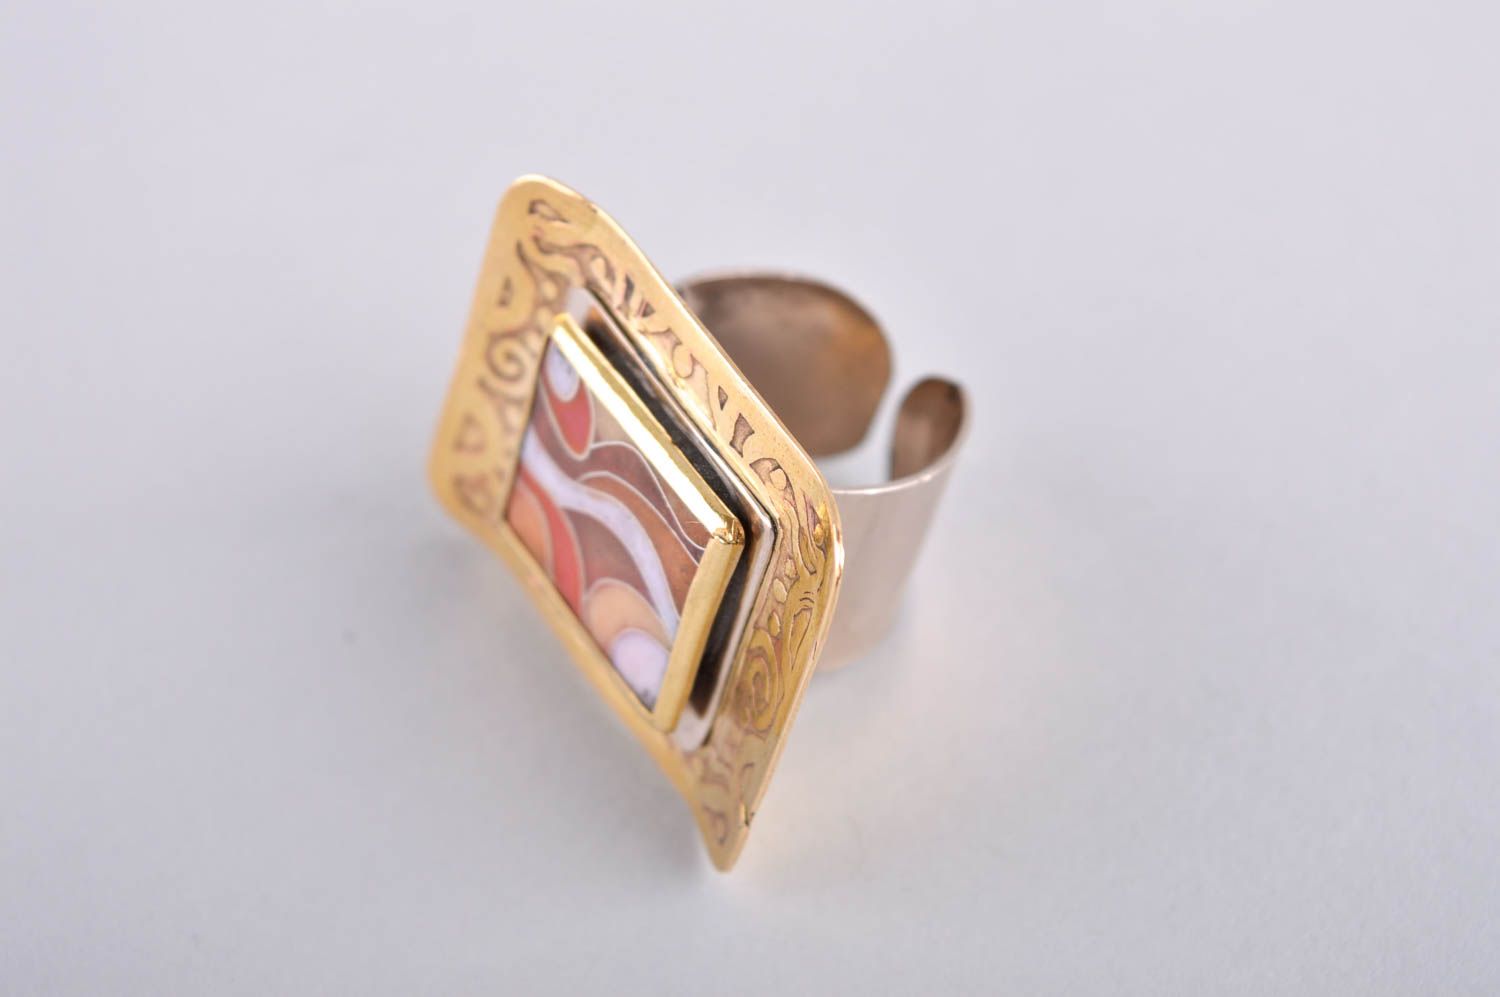 Кольцо ручной работы кольцо из латуни большое авторское украшение с эмалью  фото 2